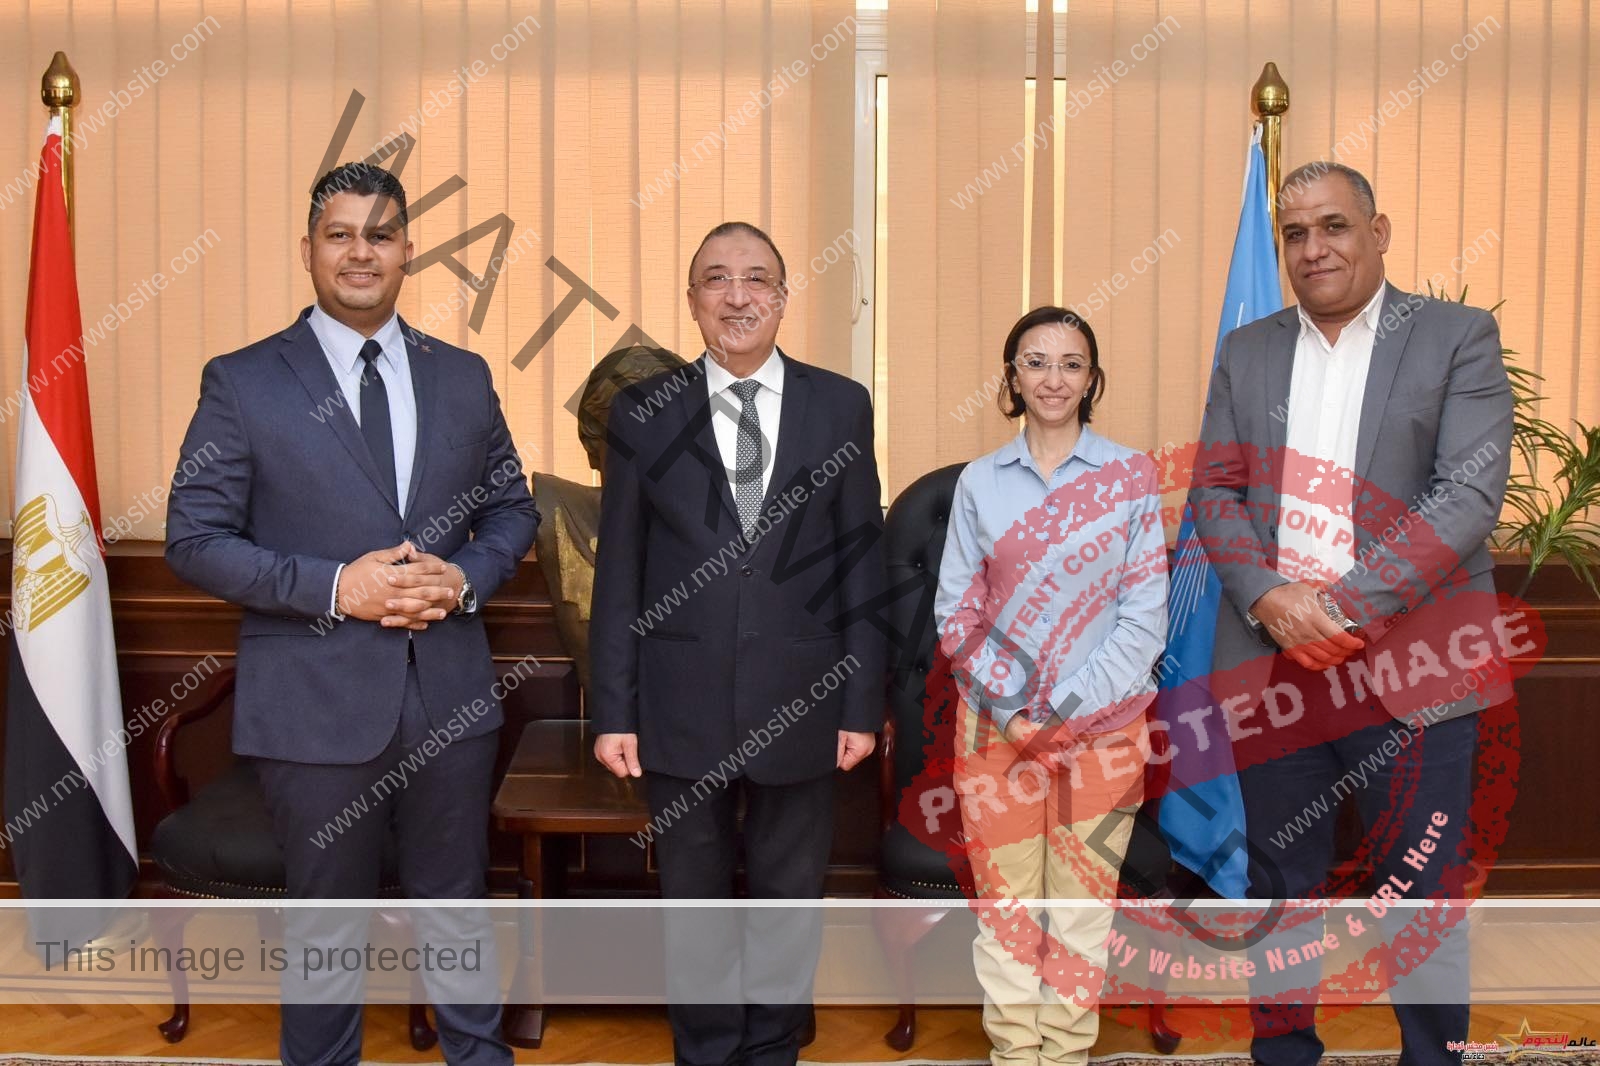 محافظ الإسكندرية يناقش تعزيز التعاون بين المحافظة والمجلس القومي لحقوق الإنسان في كافة المجالات 